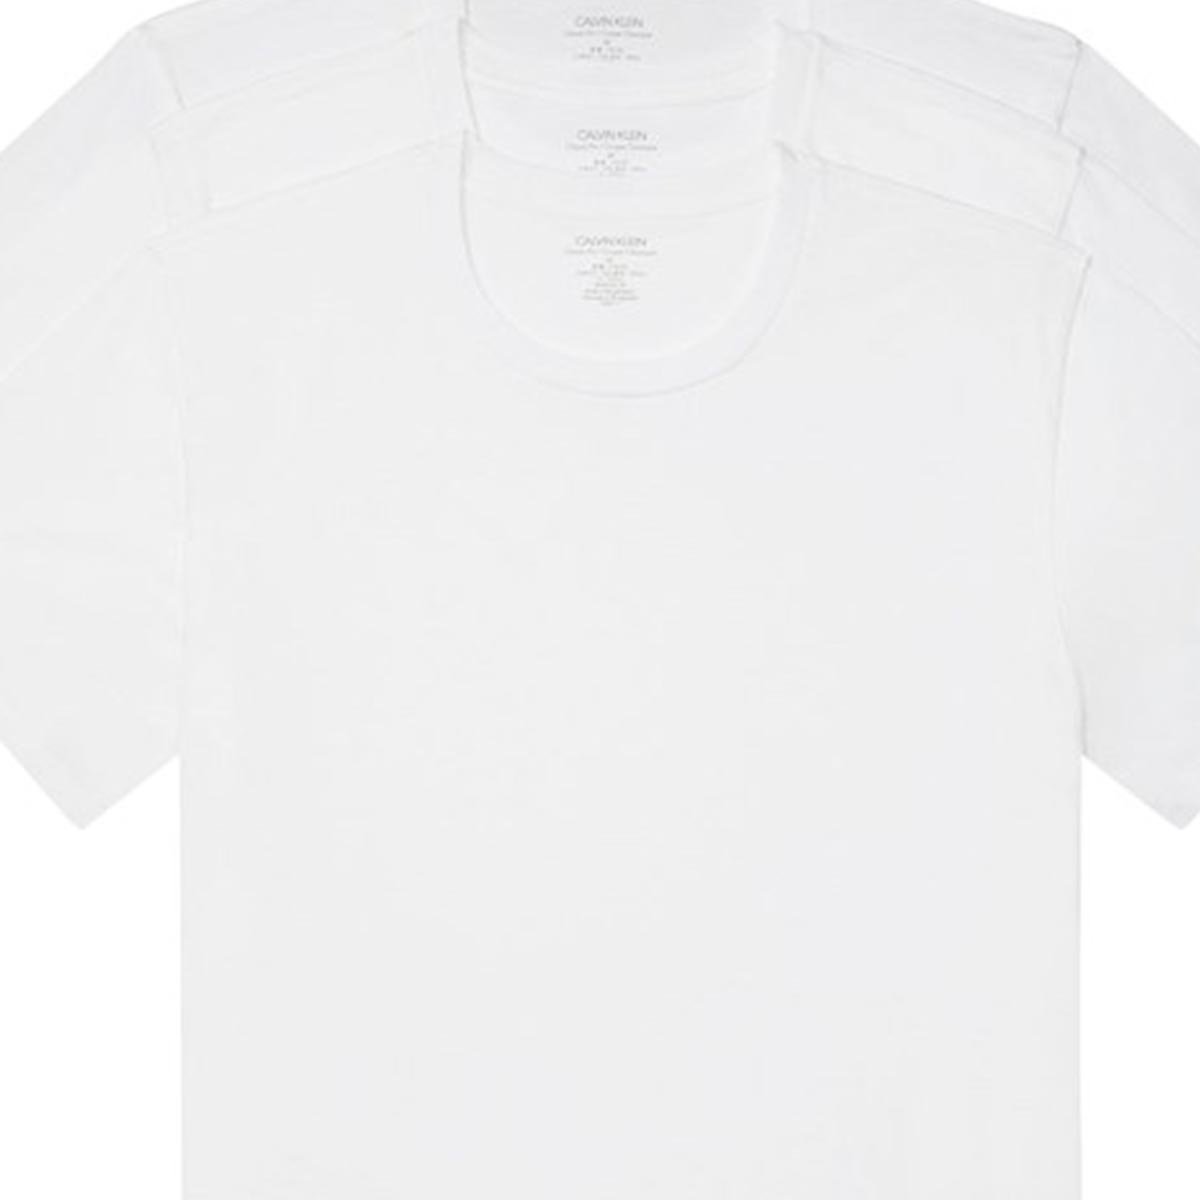 3 camisetas negras llanas Pro 5 atléticas en blanco para hombre